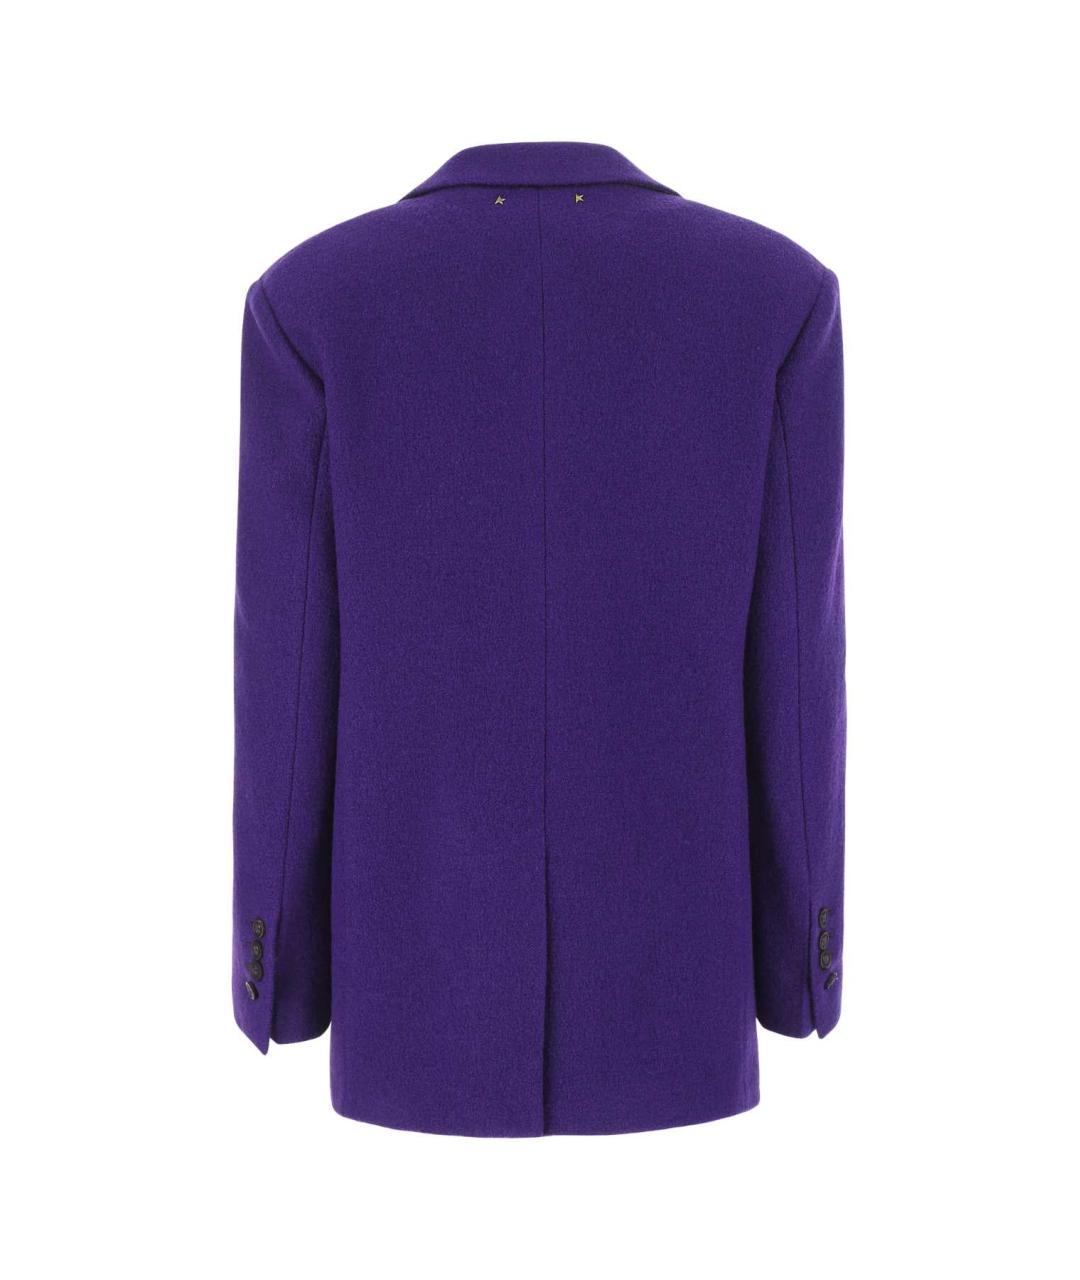 GOLDEN GOOSE DELUXE BRAND Фиолетовый полиэстеровый жакет/пиджак, фото 2